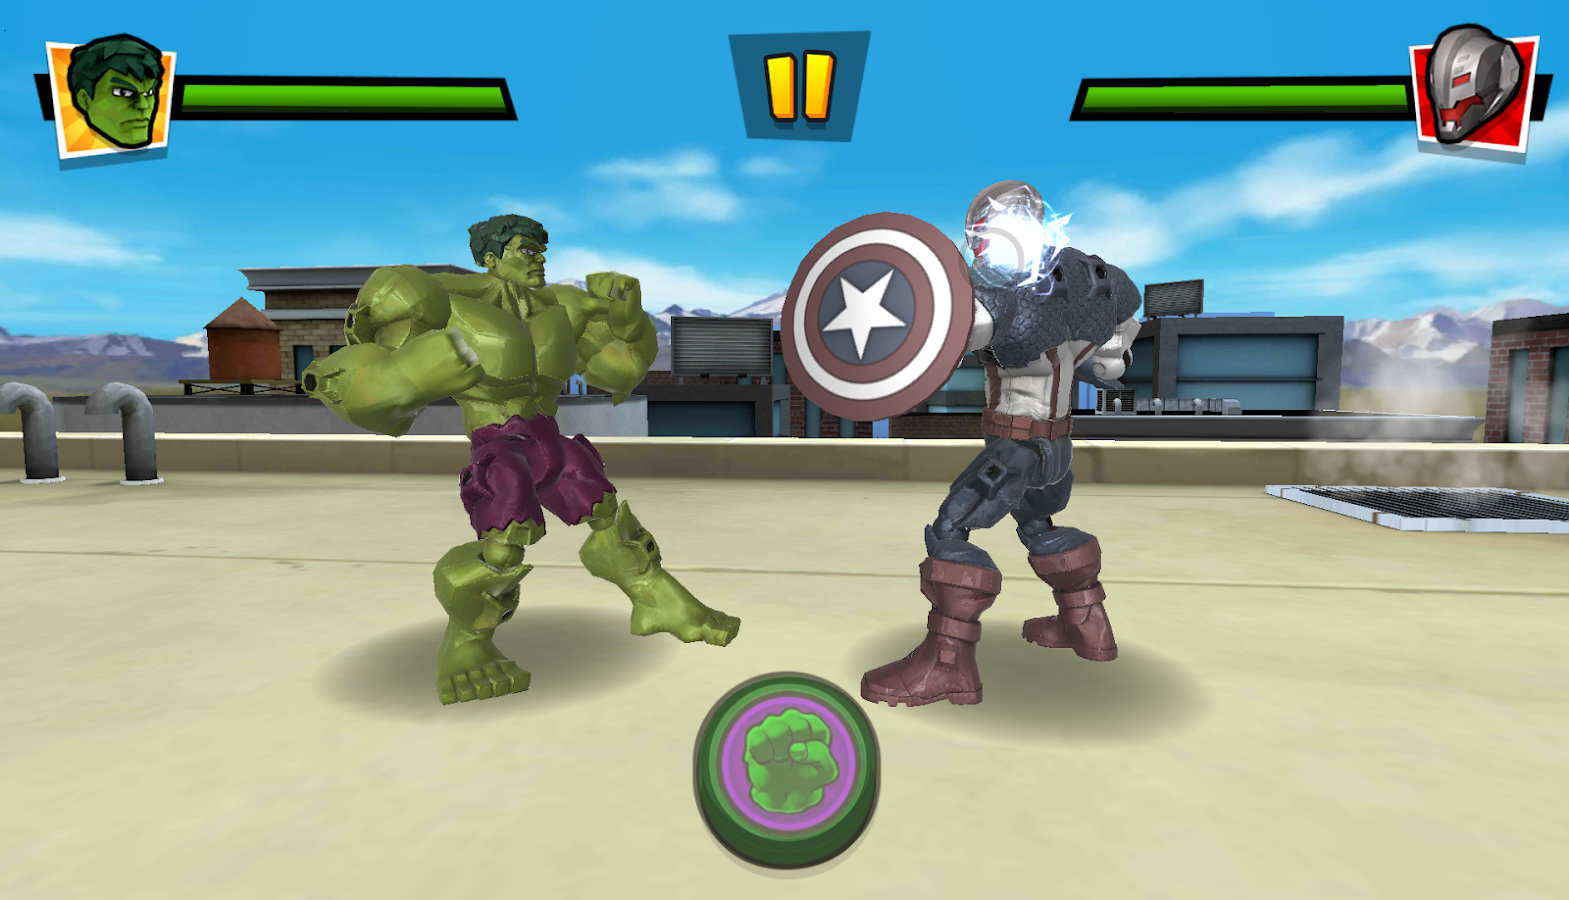   Mix+Smash: Marvel Mashers- screenshot 